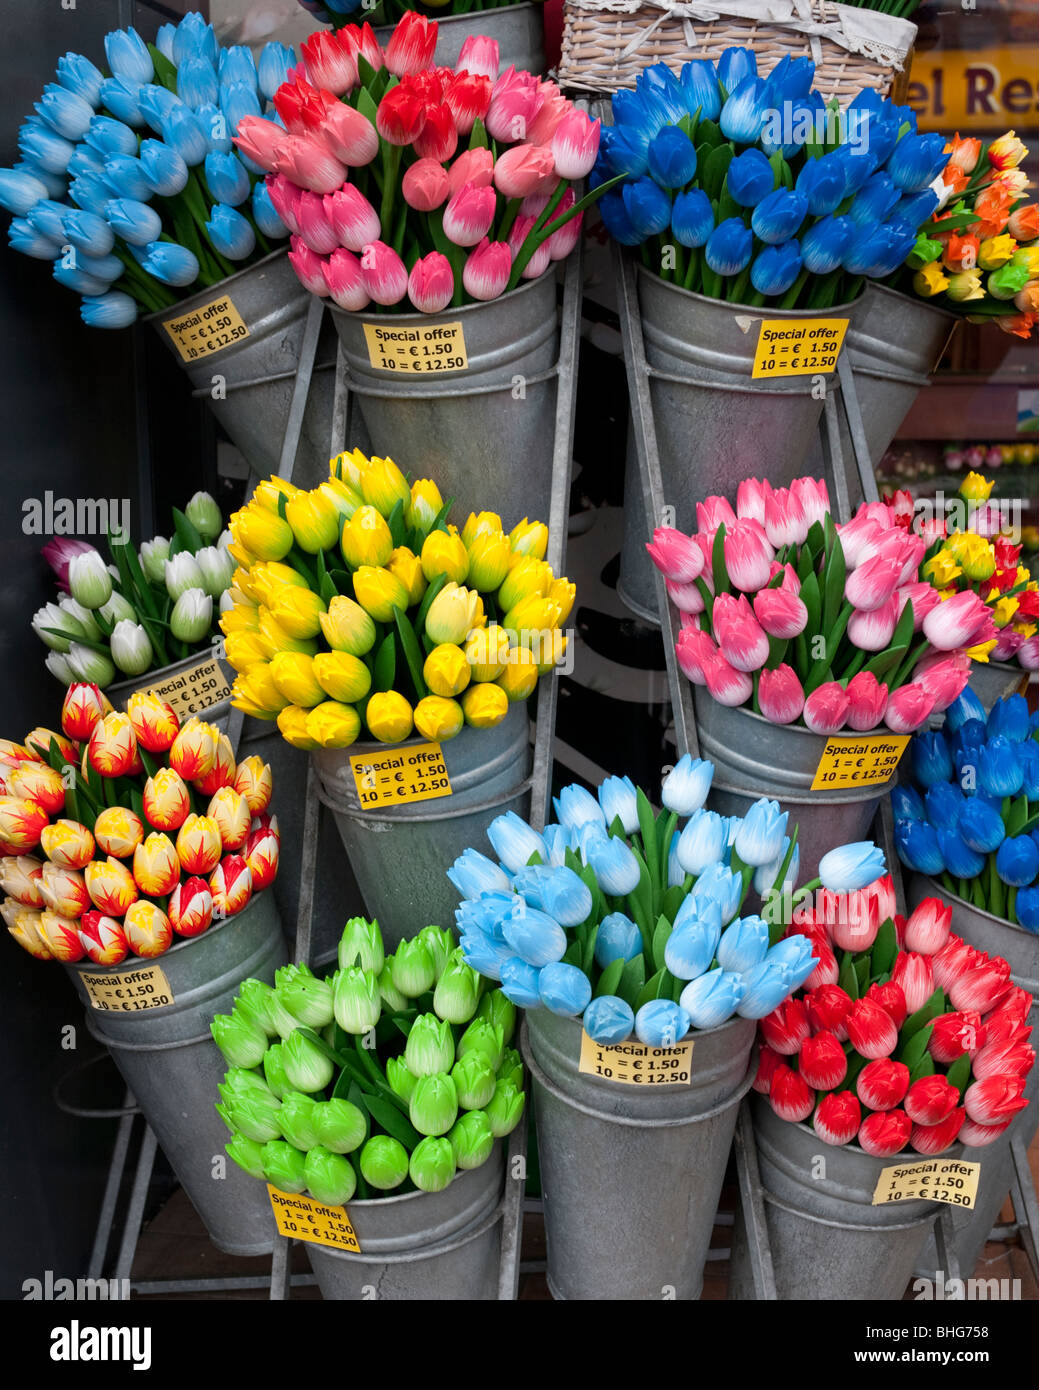 Detalle de muchas coloridas flores de tulipanes de plástico en una tienda turística en Amsterdam, Países Bajos Foto de stock